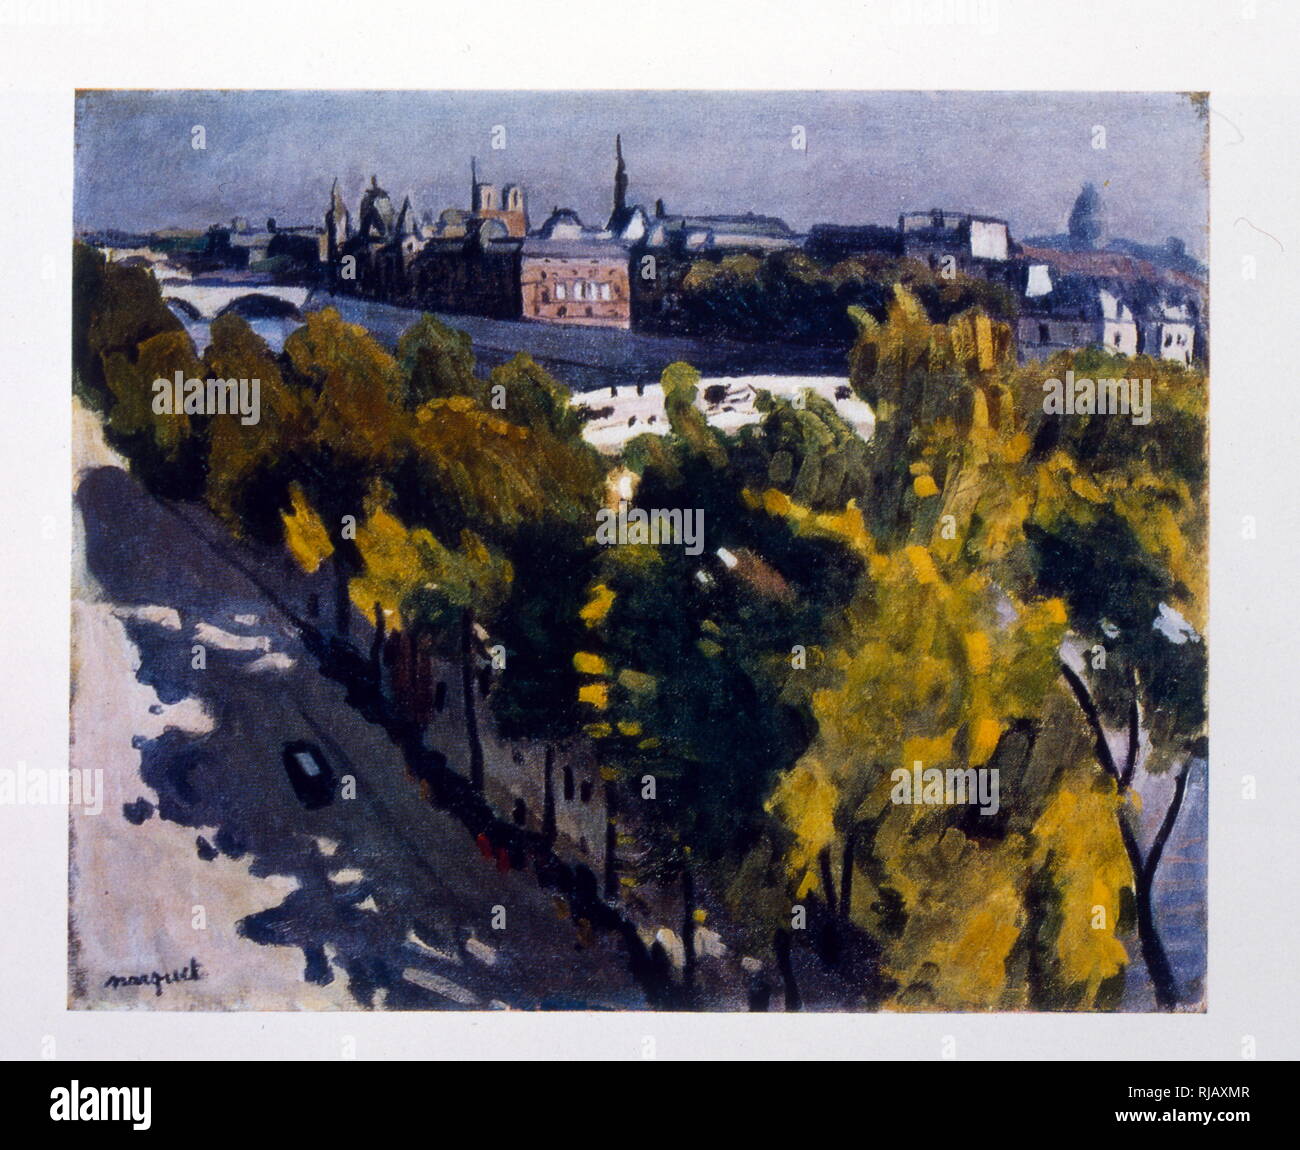 Paris les berges de la Seine, 1935. Par Alexander Deyneka, (1899-1969), peintre réaliste socialiste russe soviétique, graphiste, sculpteur Banque D'Images